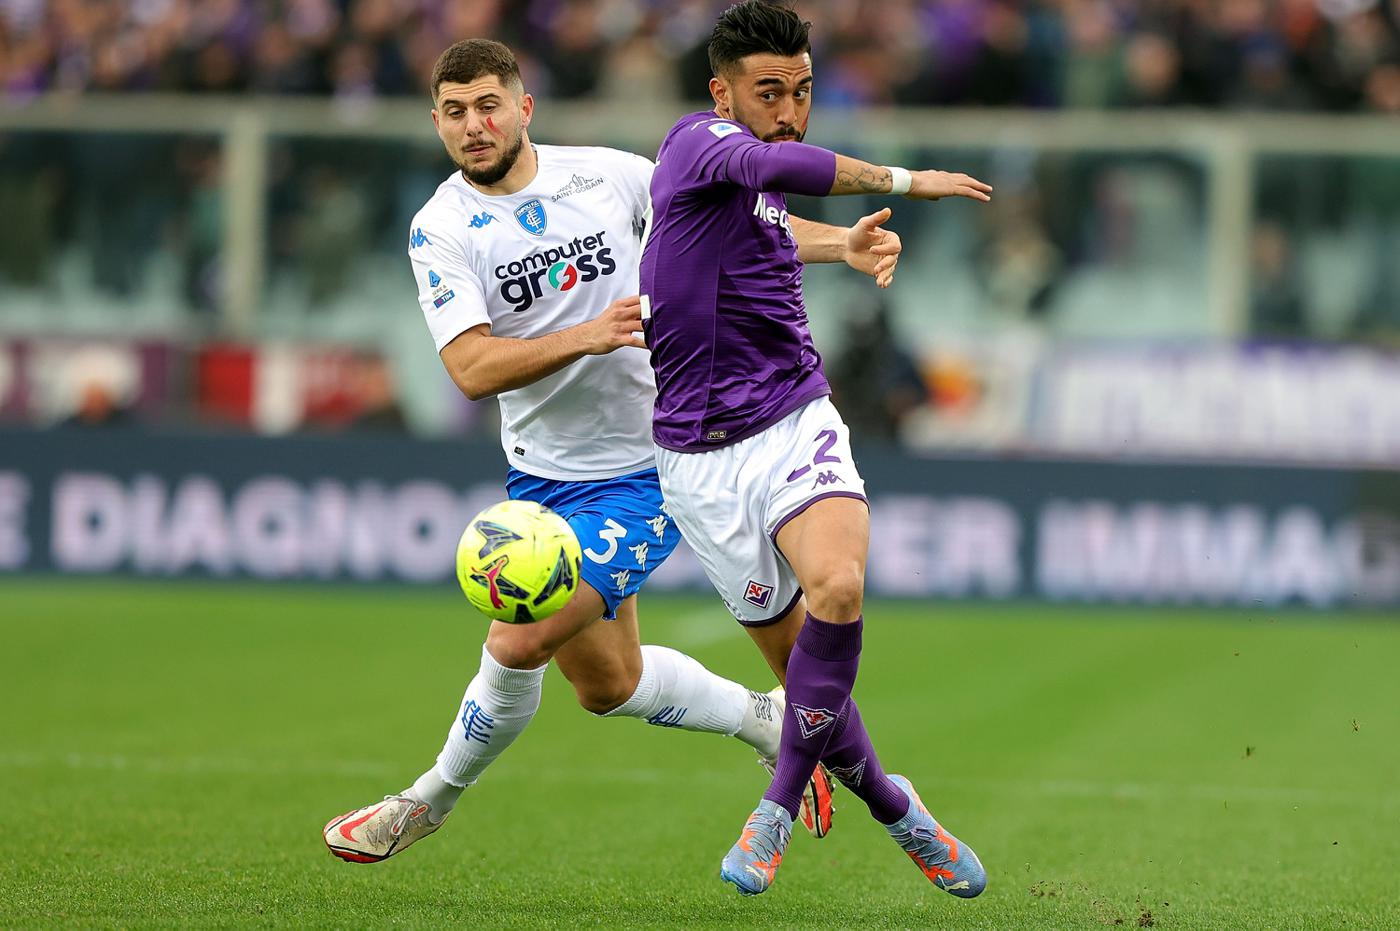 Fiorentina and Empoli Draw